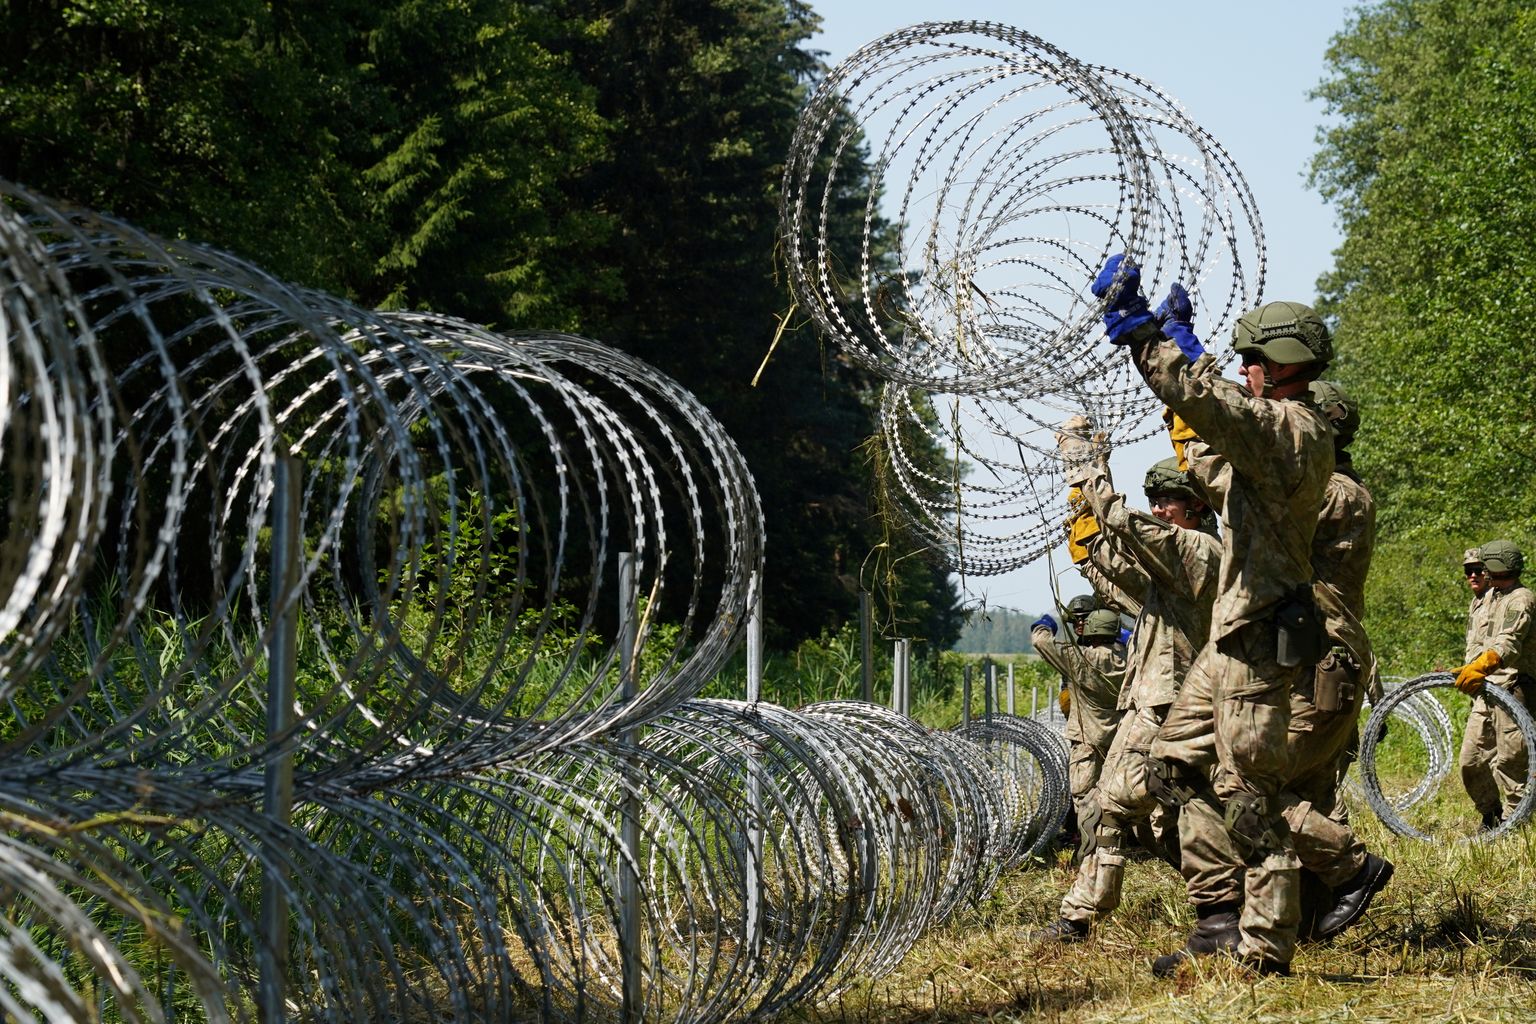 Leedu sõdurid panemas Valgevene piiri juures Druskininkais okastraati, et takistada ebaseaduslike migrantide sisenemist Leetu